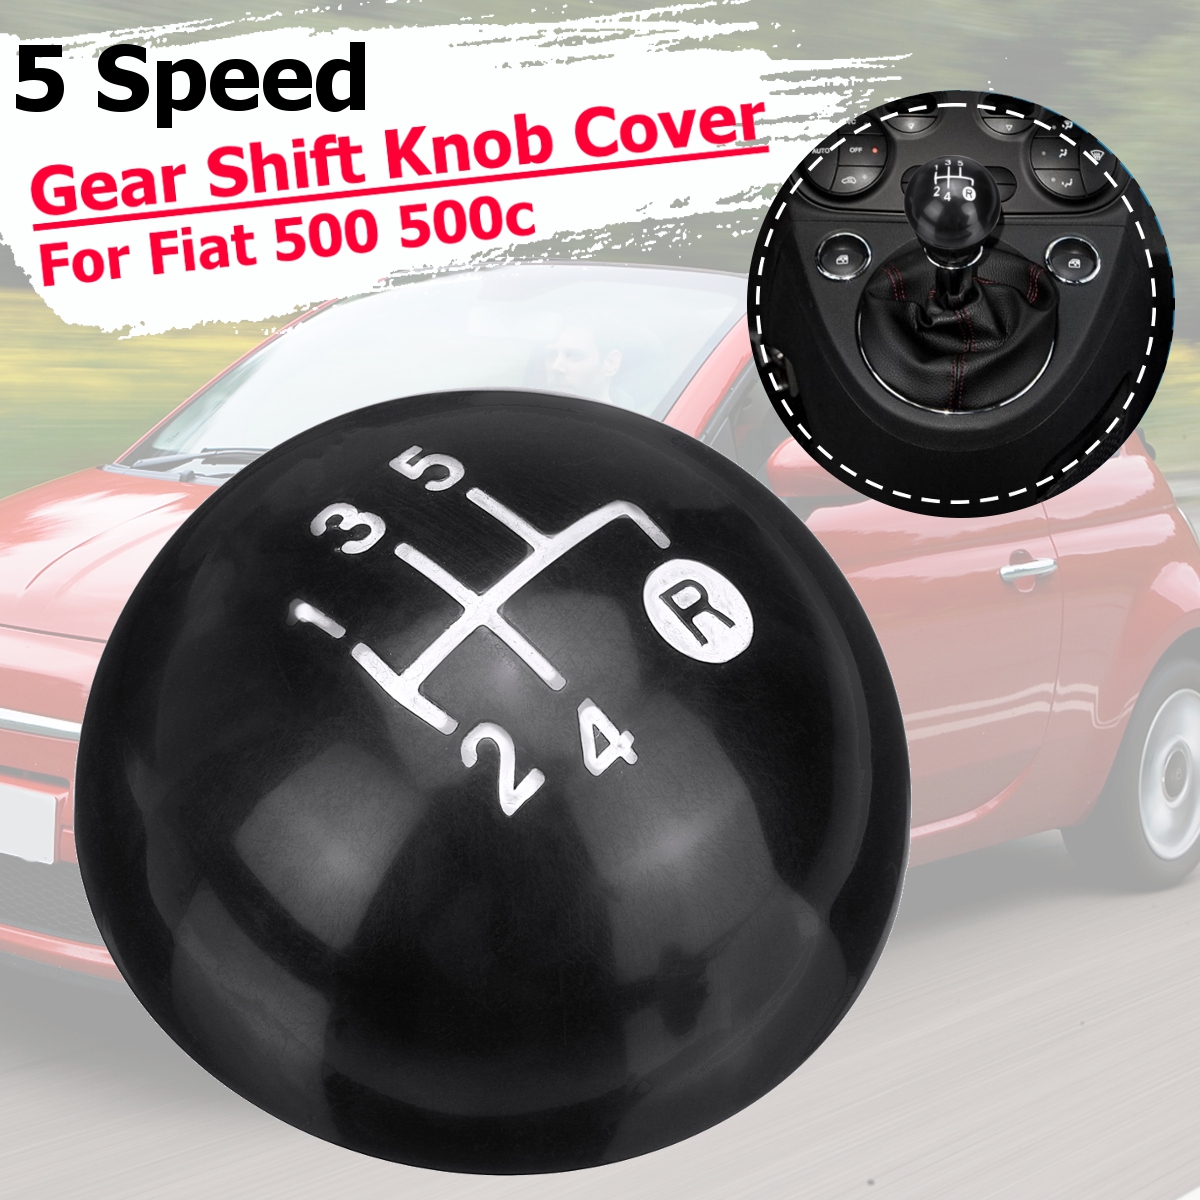 5 Speed Black Gear Shift Knob Kit for Fiat 500 500c 2012-2013 ILS